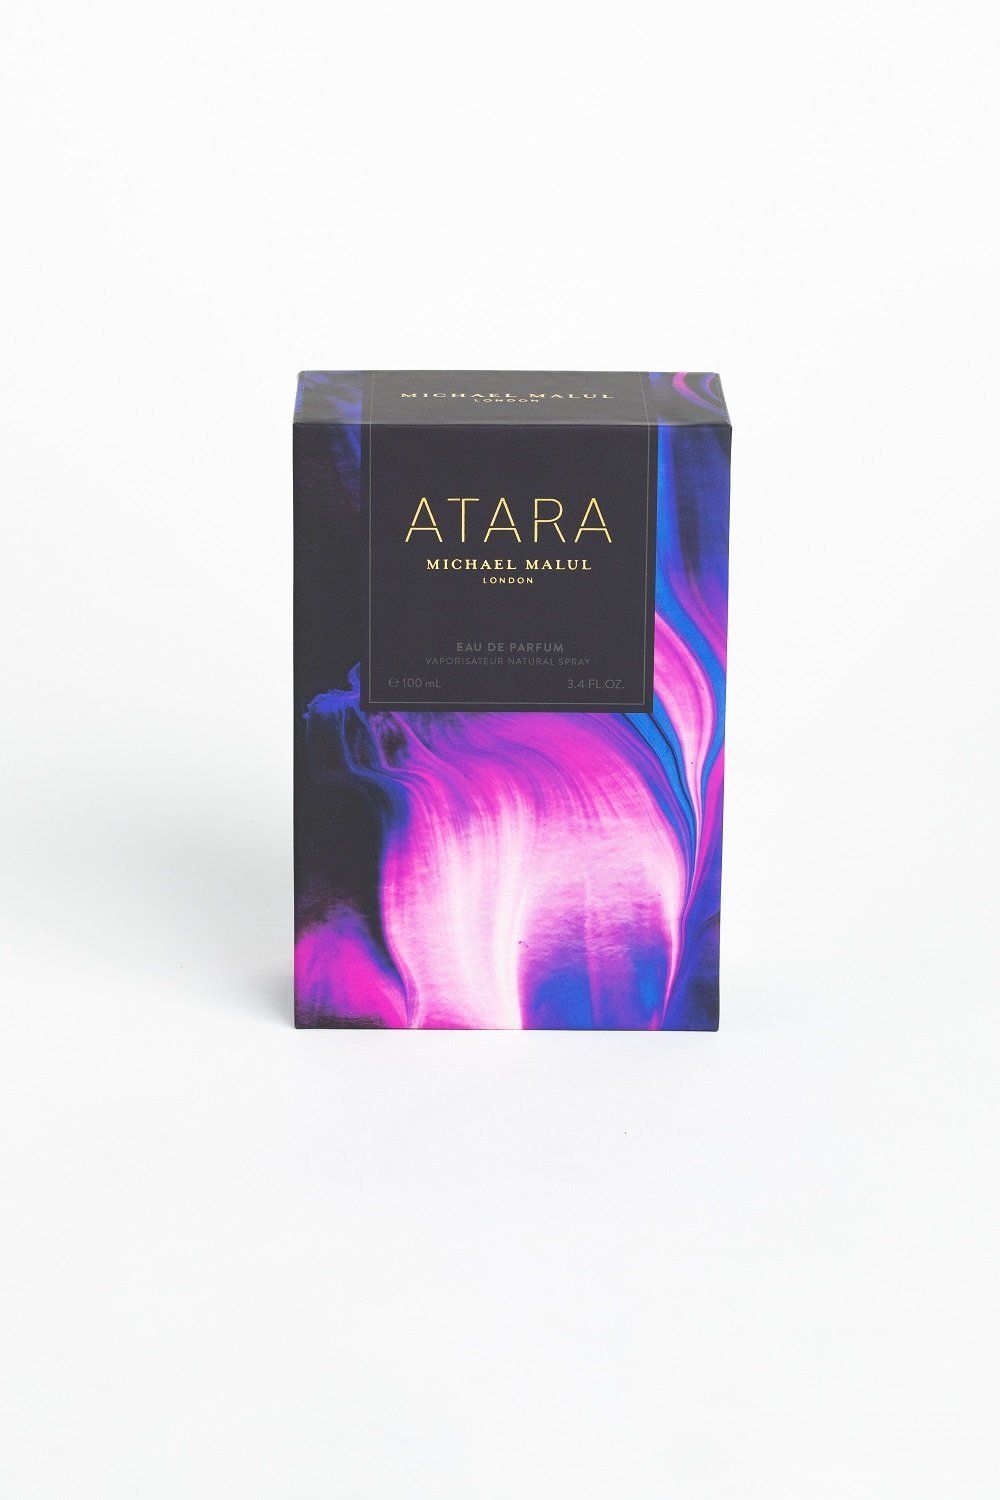 Atara Eau de Parfum Spray for Women 3.4 oz. Click to open in modal